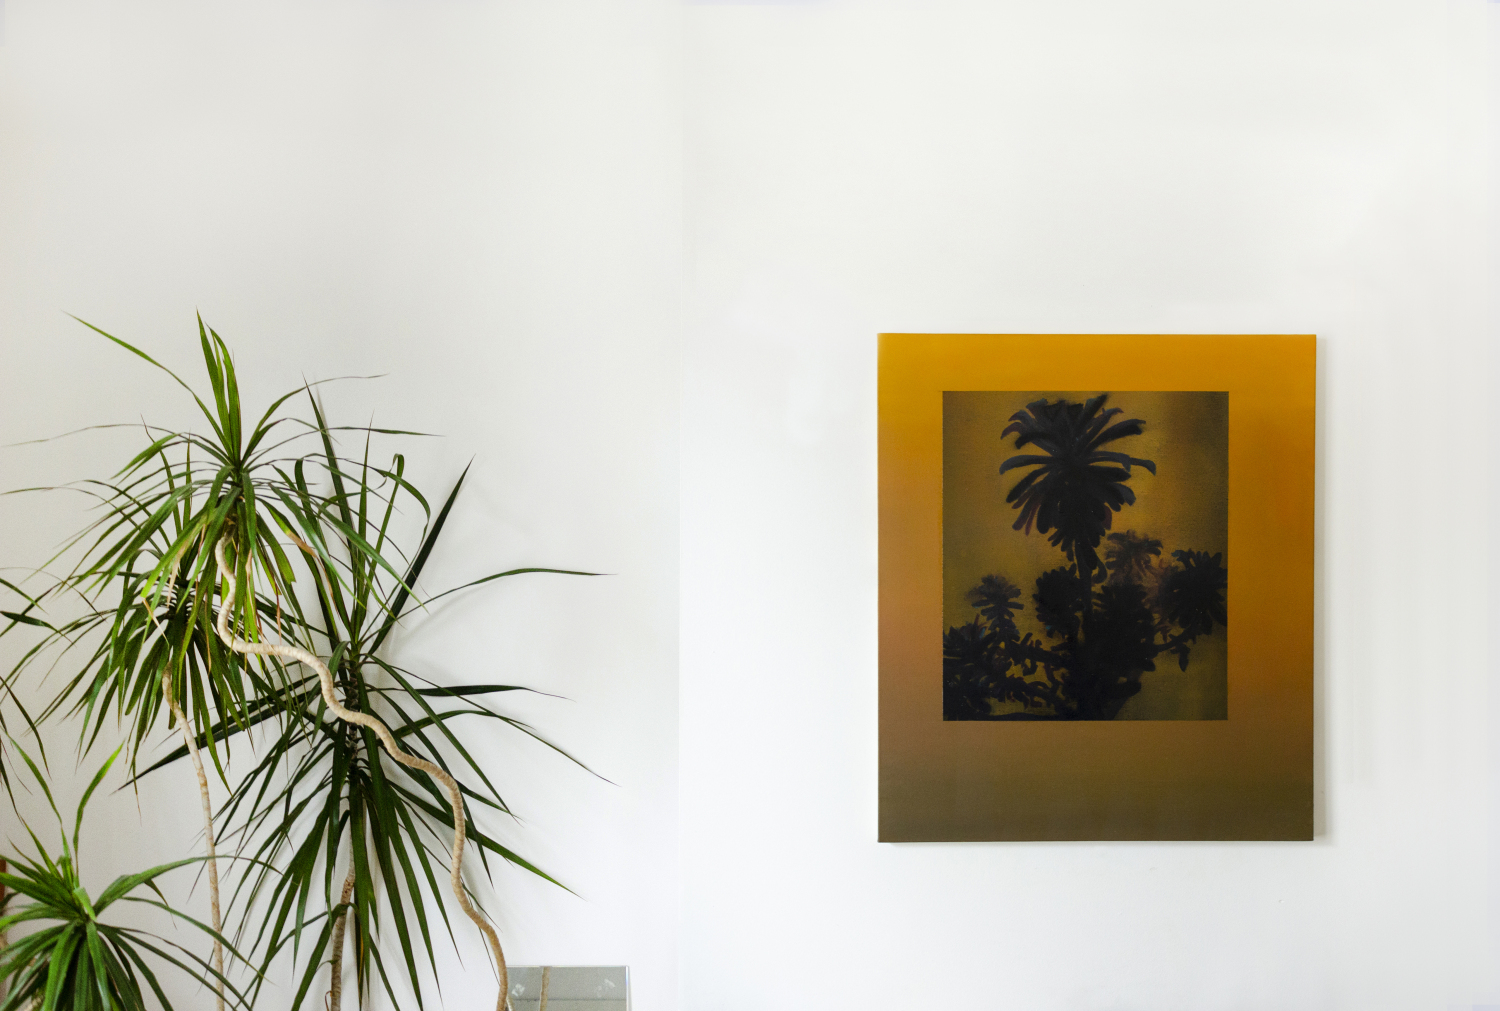 Clément Davout, Une seule lampe éclaire la grande pièce, 2019, oil on canvas, studio view